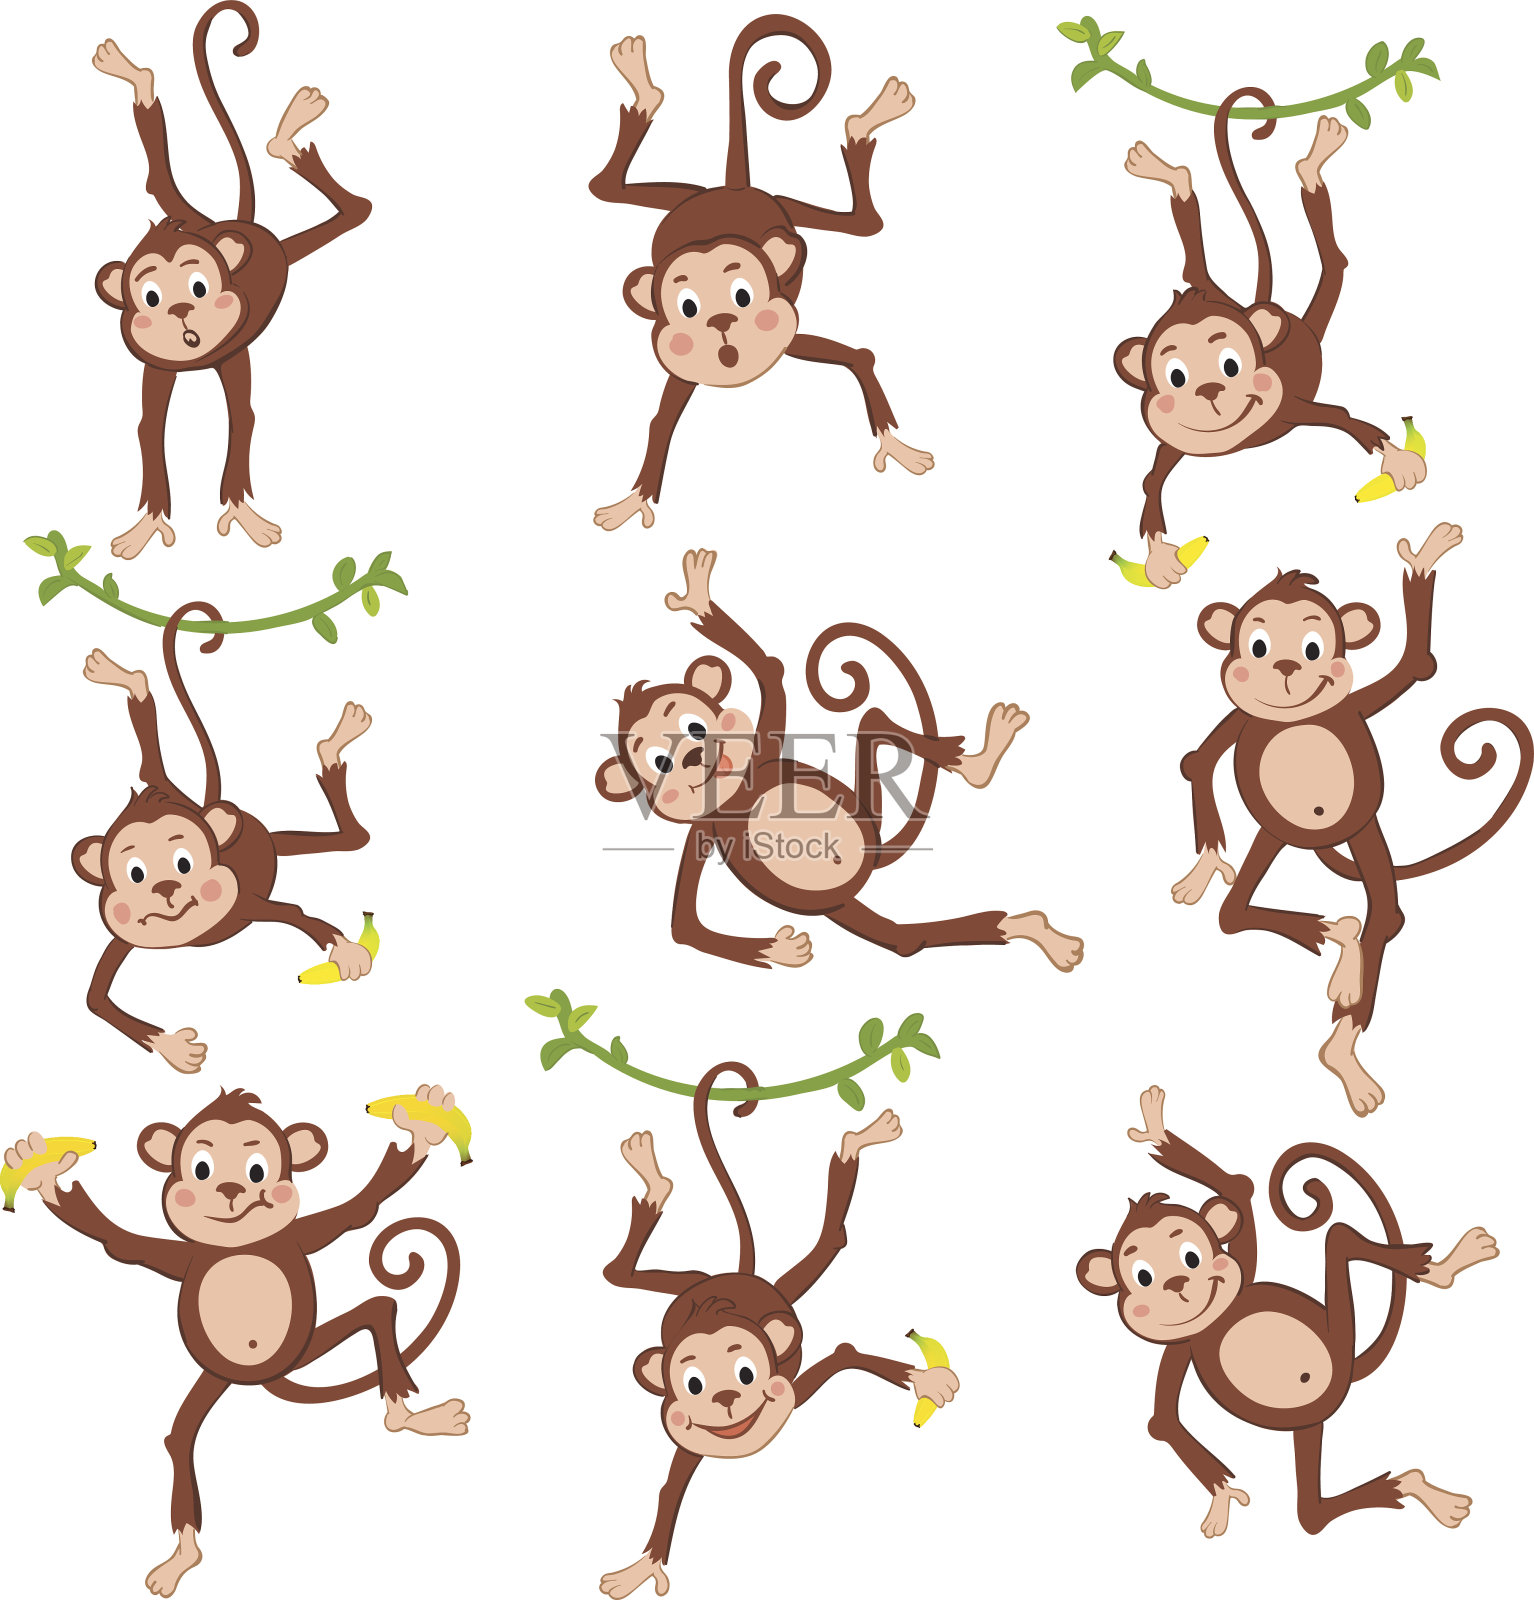 可爱有趣的猴子套装插画图片素材